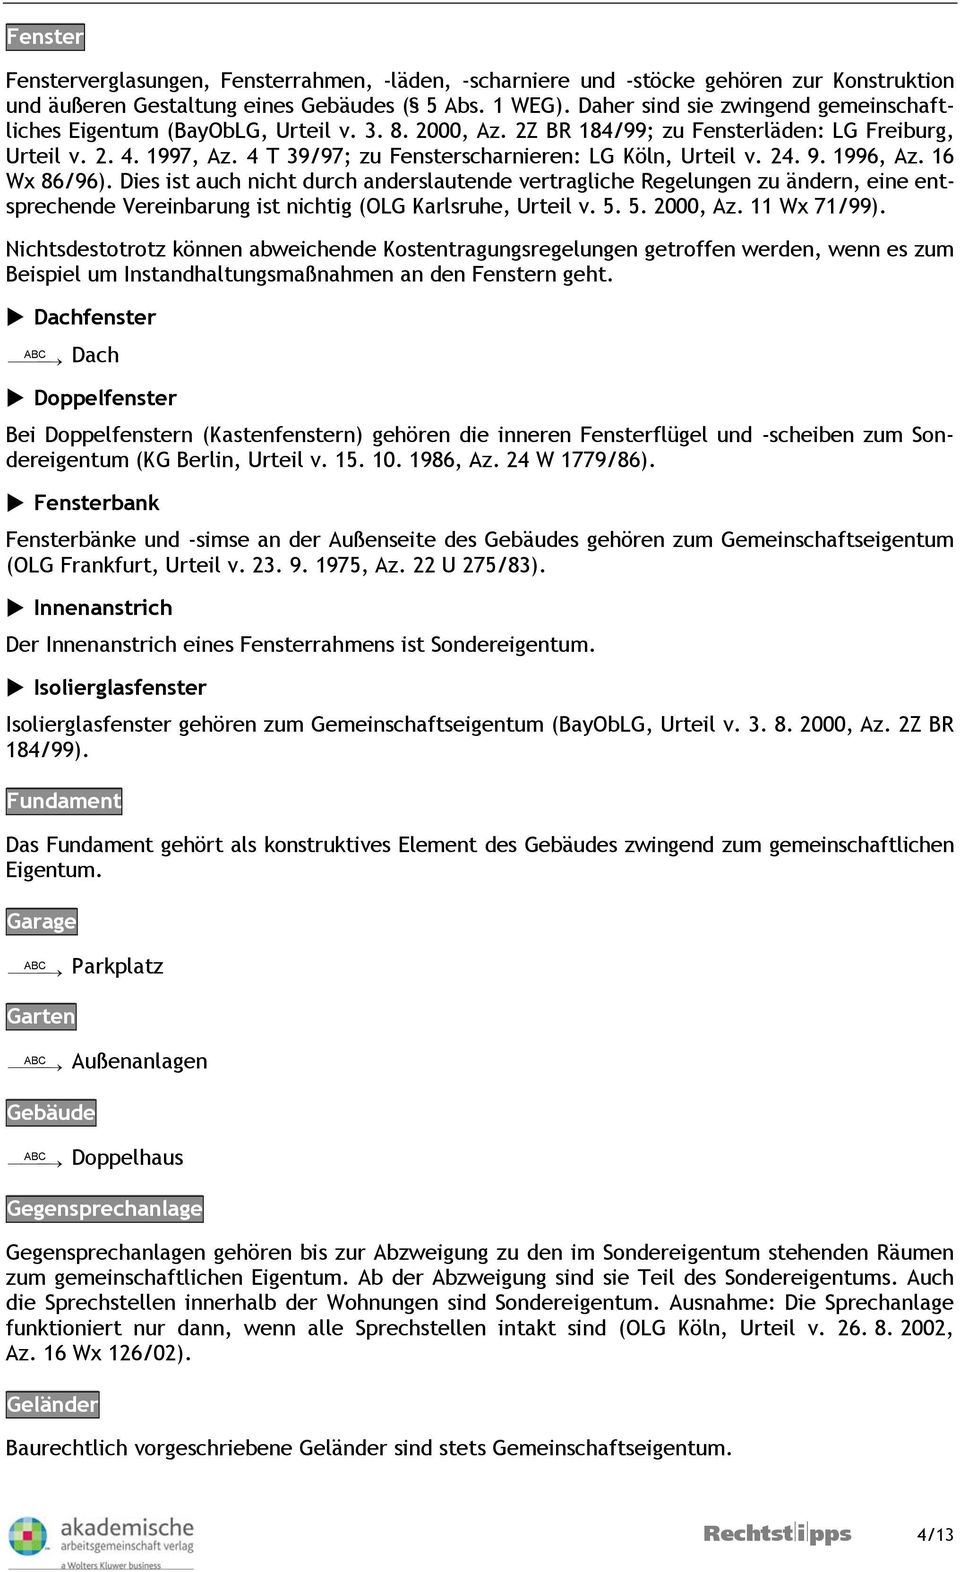 4 T 39/97; zu Fensterscharnieren: LG Köln, Urteil v. 24. 9. 1996, Az. 16 Wx 86/96).